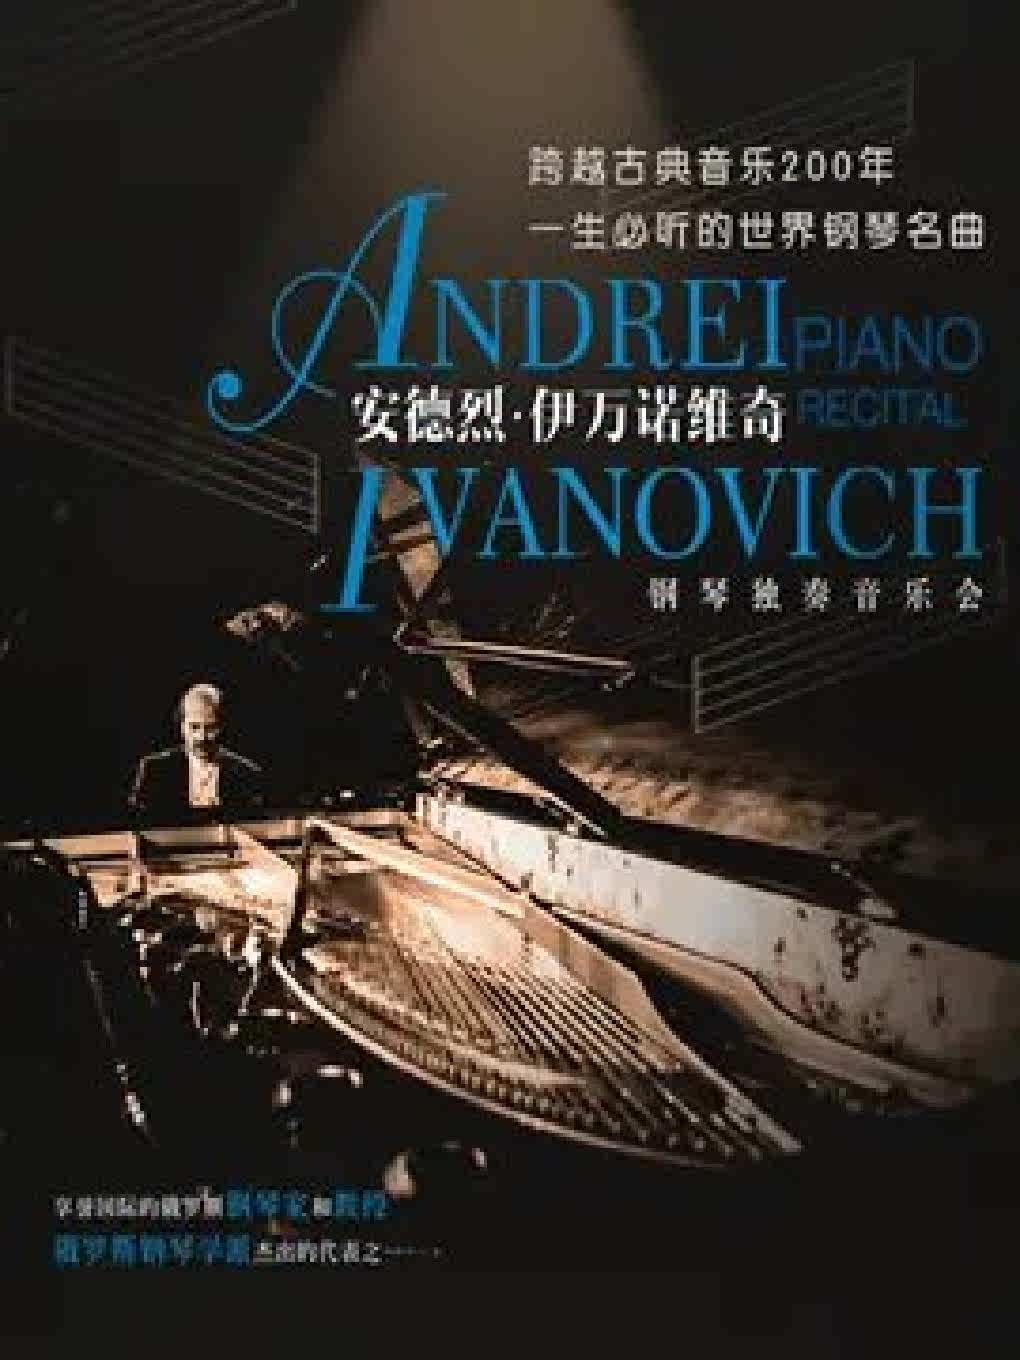 跨越古典音乐200年 一生必听的世界钢琴名曲 安德烈·伊万诺维奇钢琴独奏音乐会